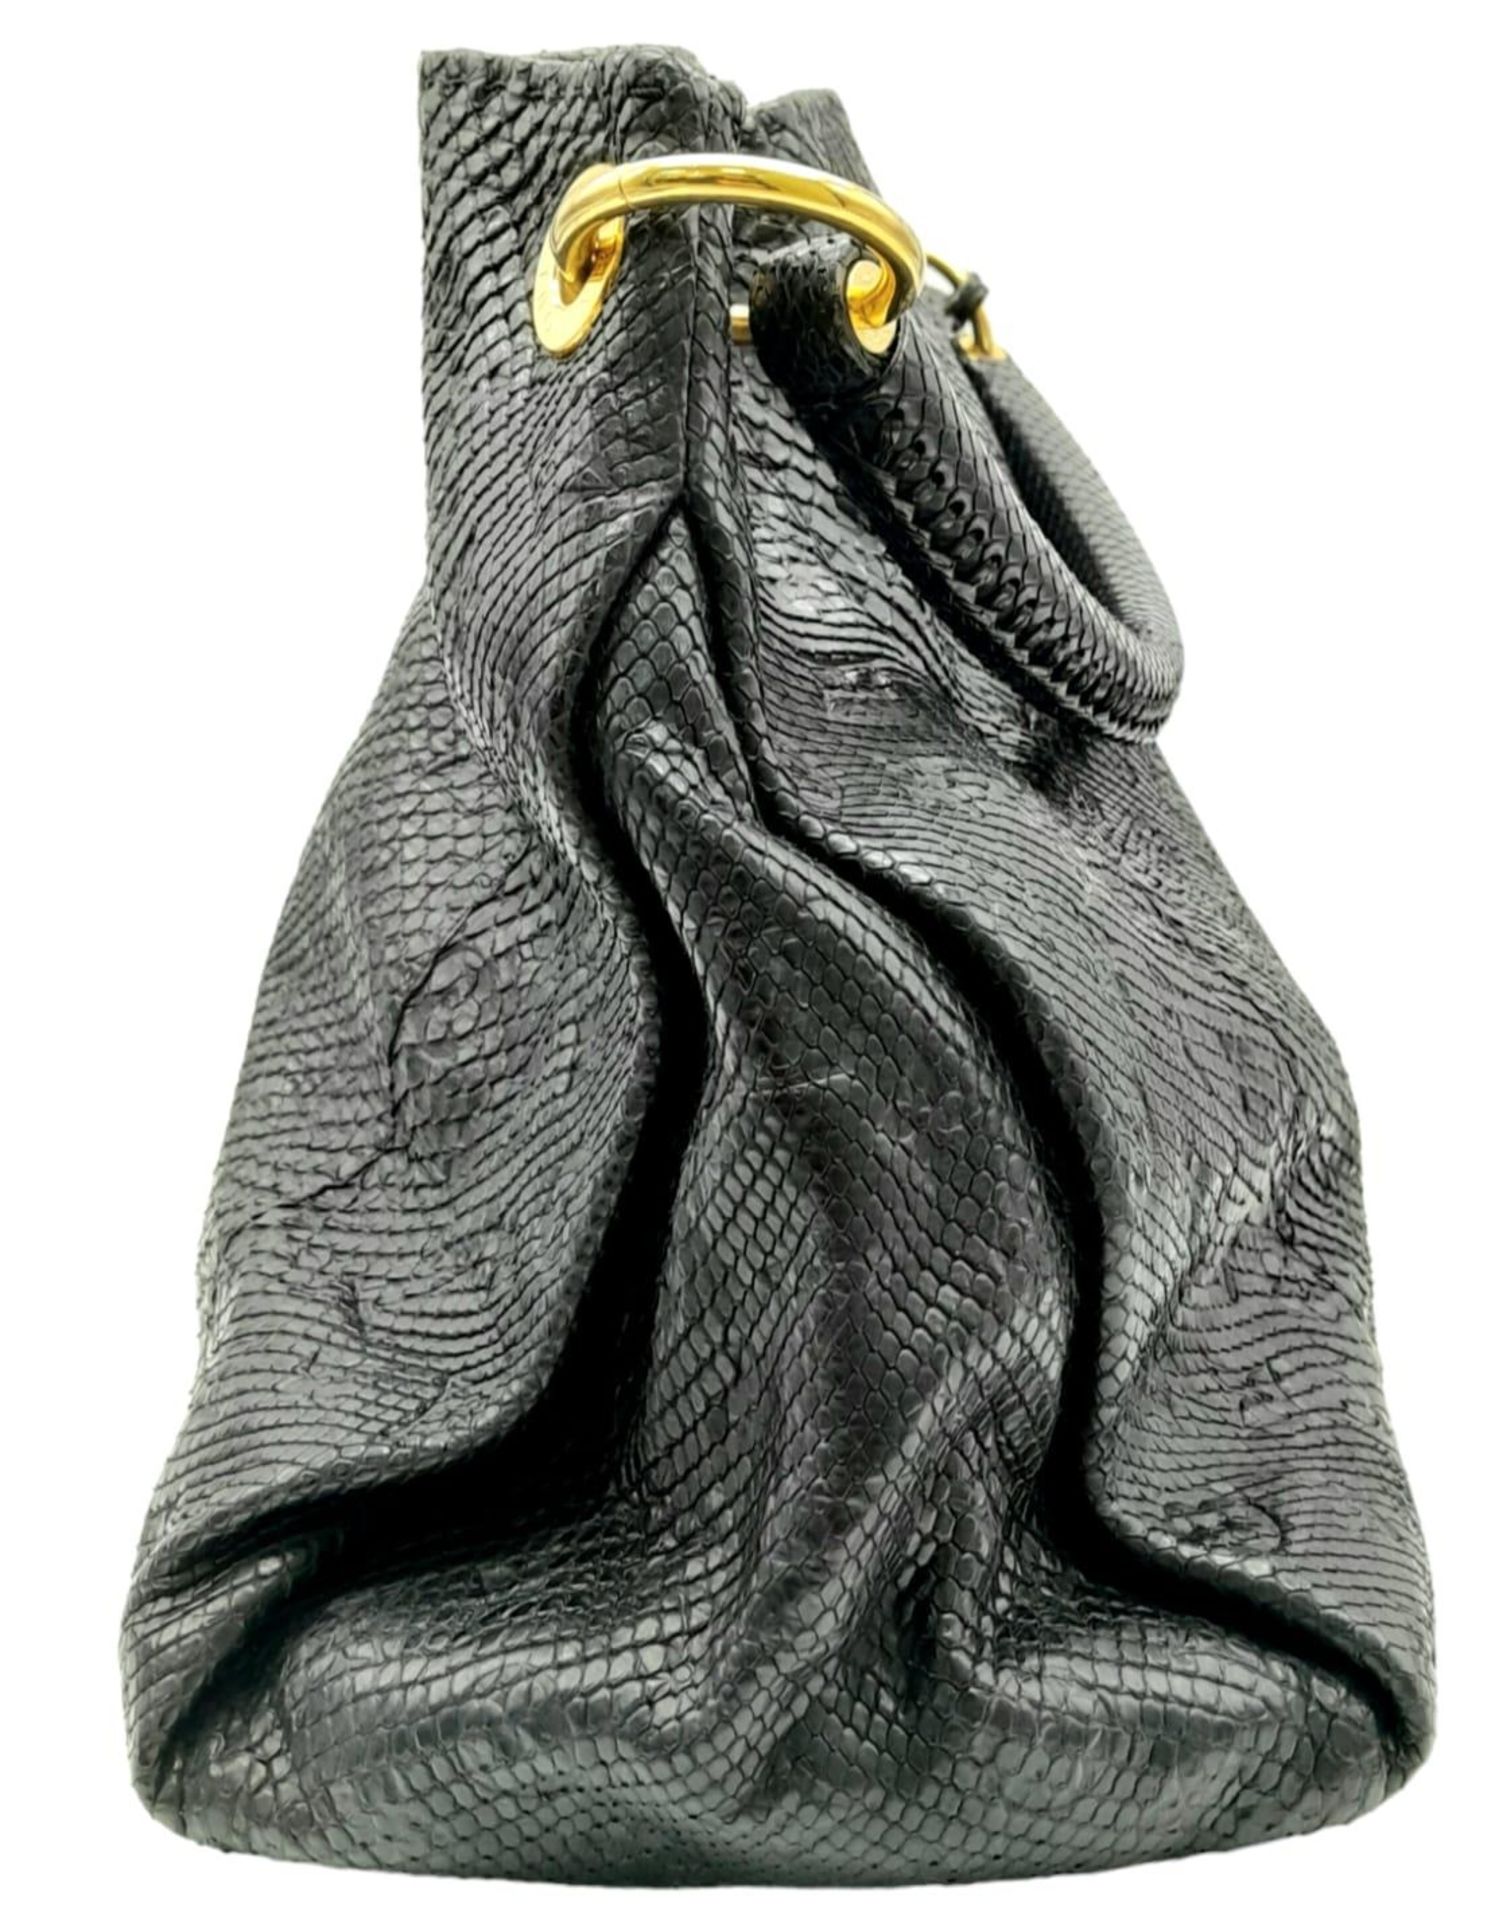 A Louis Vuitton Monogram Black Snakeskin Tote Bag. Gold tone hardware. Spacious black leather - Bild 3 aus 8